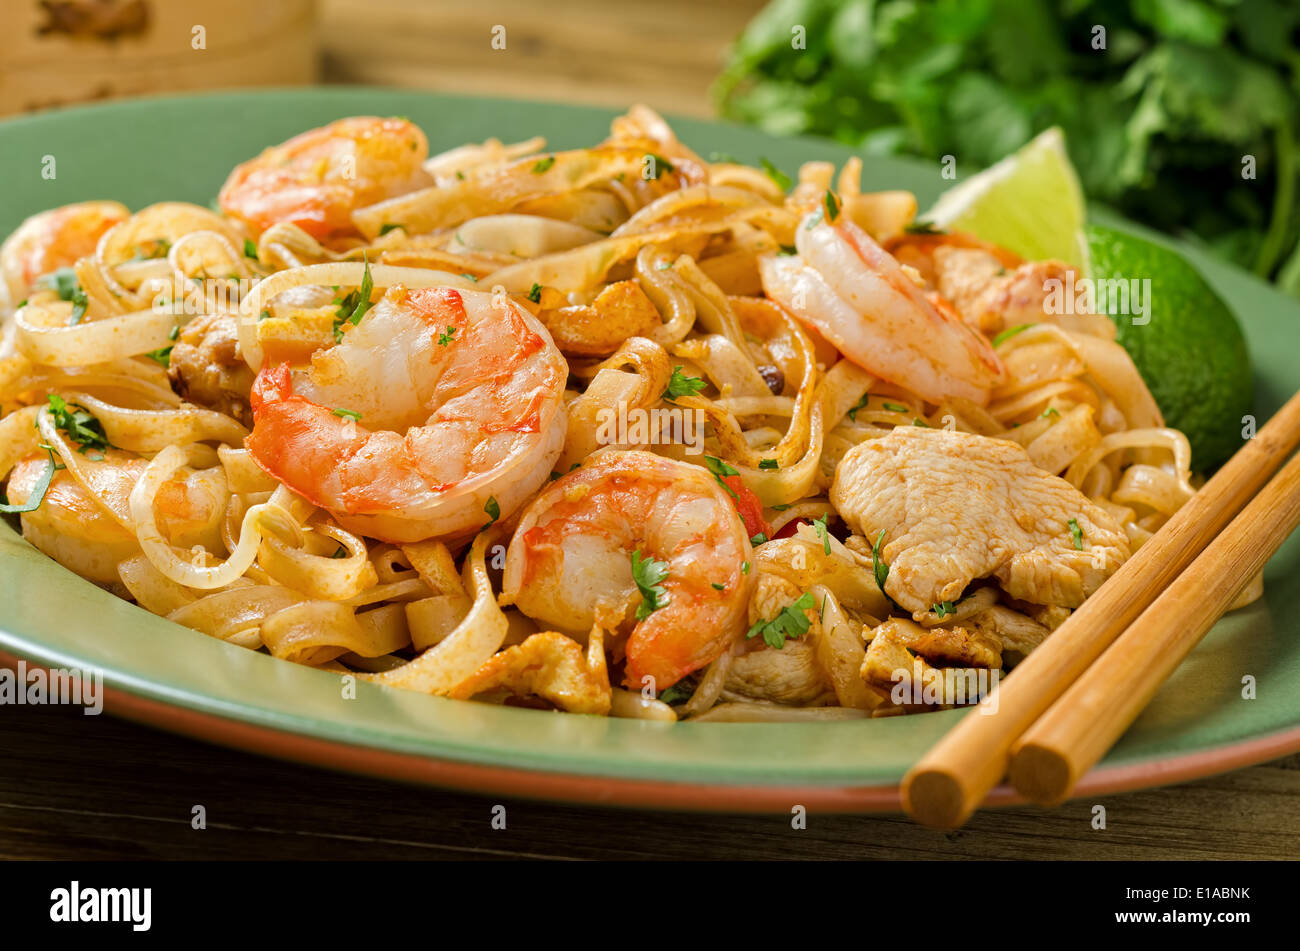 Ein Teller mit würzigen pad Thai mit Huhn und Garnelen mit Stäbchen  Stockfotografie - Alamy